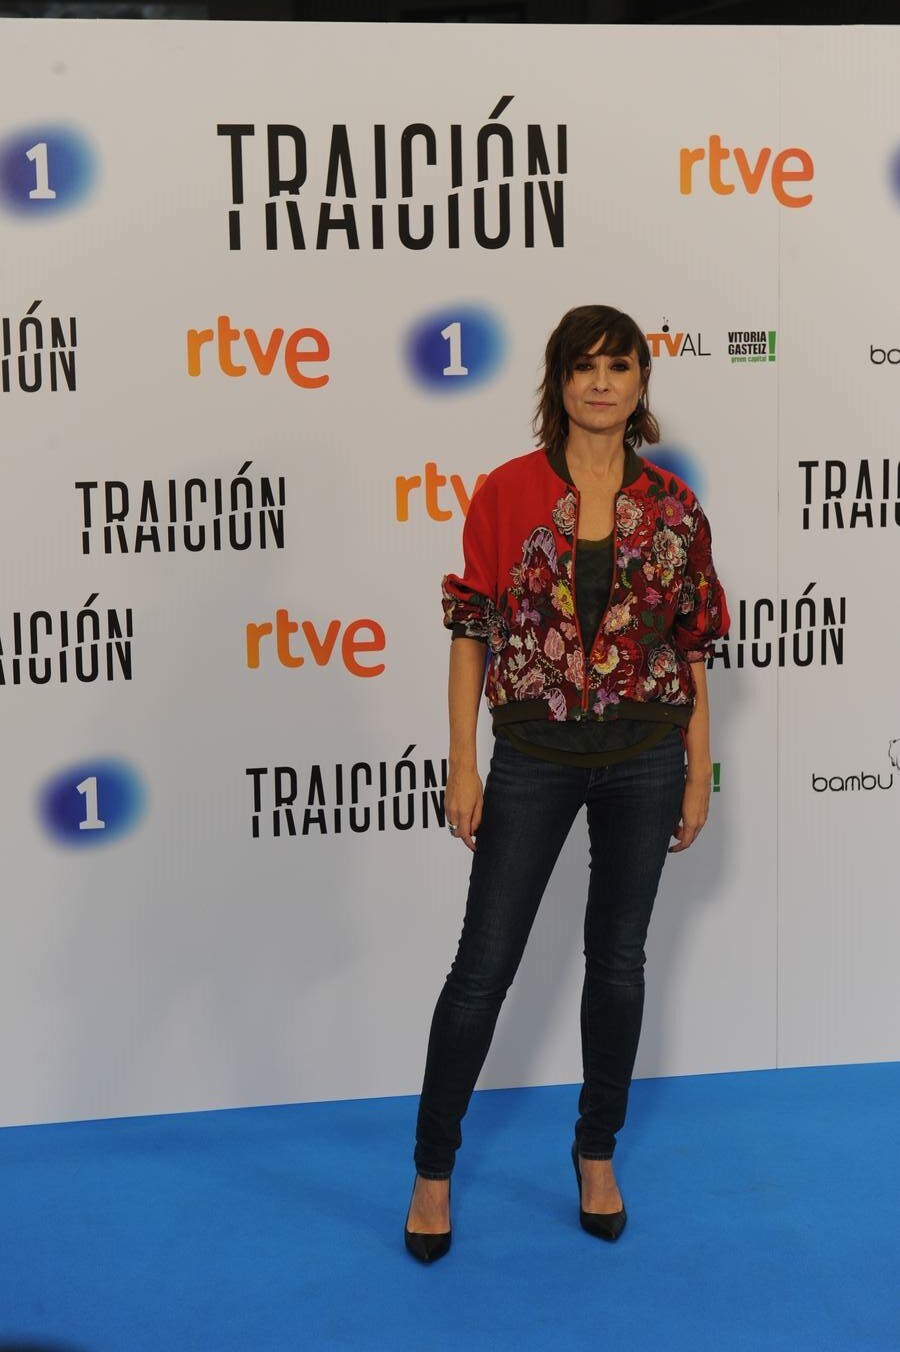 Presentación en el FesTVal de &#039;Traición&#039; de TVE, con Ana Belén